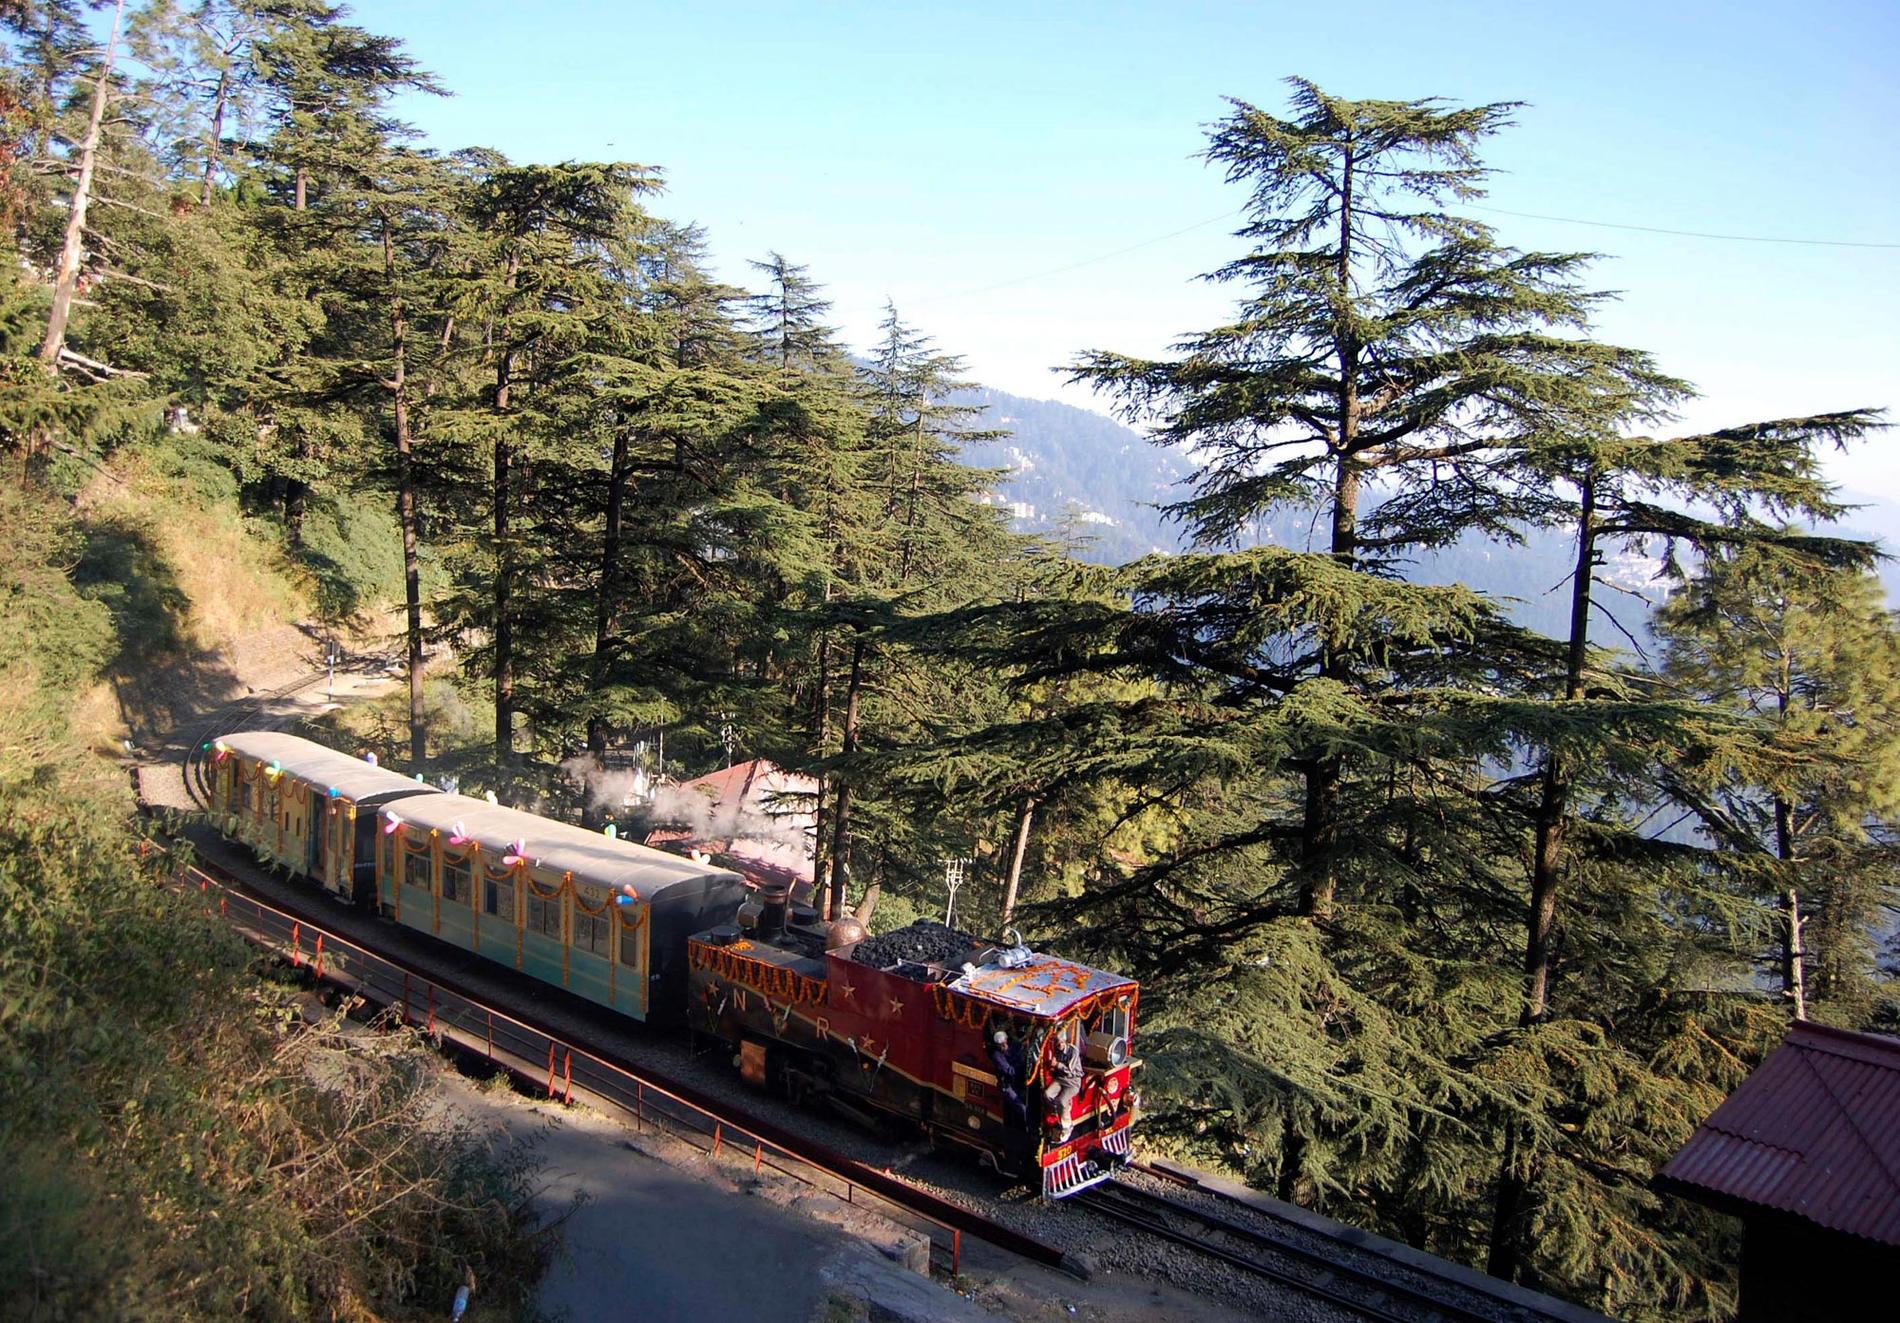 Mountain Railways of India, Indien The Darjeeling Himalayan Railway, Kalka-Shimla Railway och Kangra Valley Railway slingrar sig alla fram längs Himalayas lägre delar. De har också andra saker gemensamt: obekväma, smärtsamt långsamma och oftast överfulla med passagerare.
www.indianrailways.gov.in
 Kolla in billigaste flygen till Indien här.